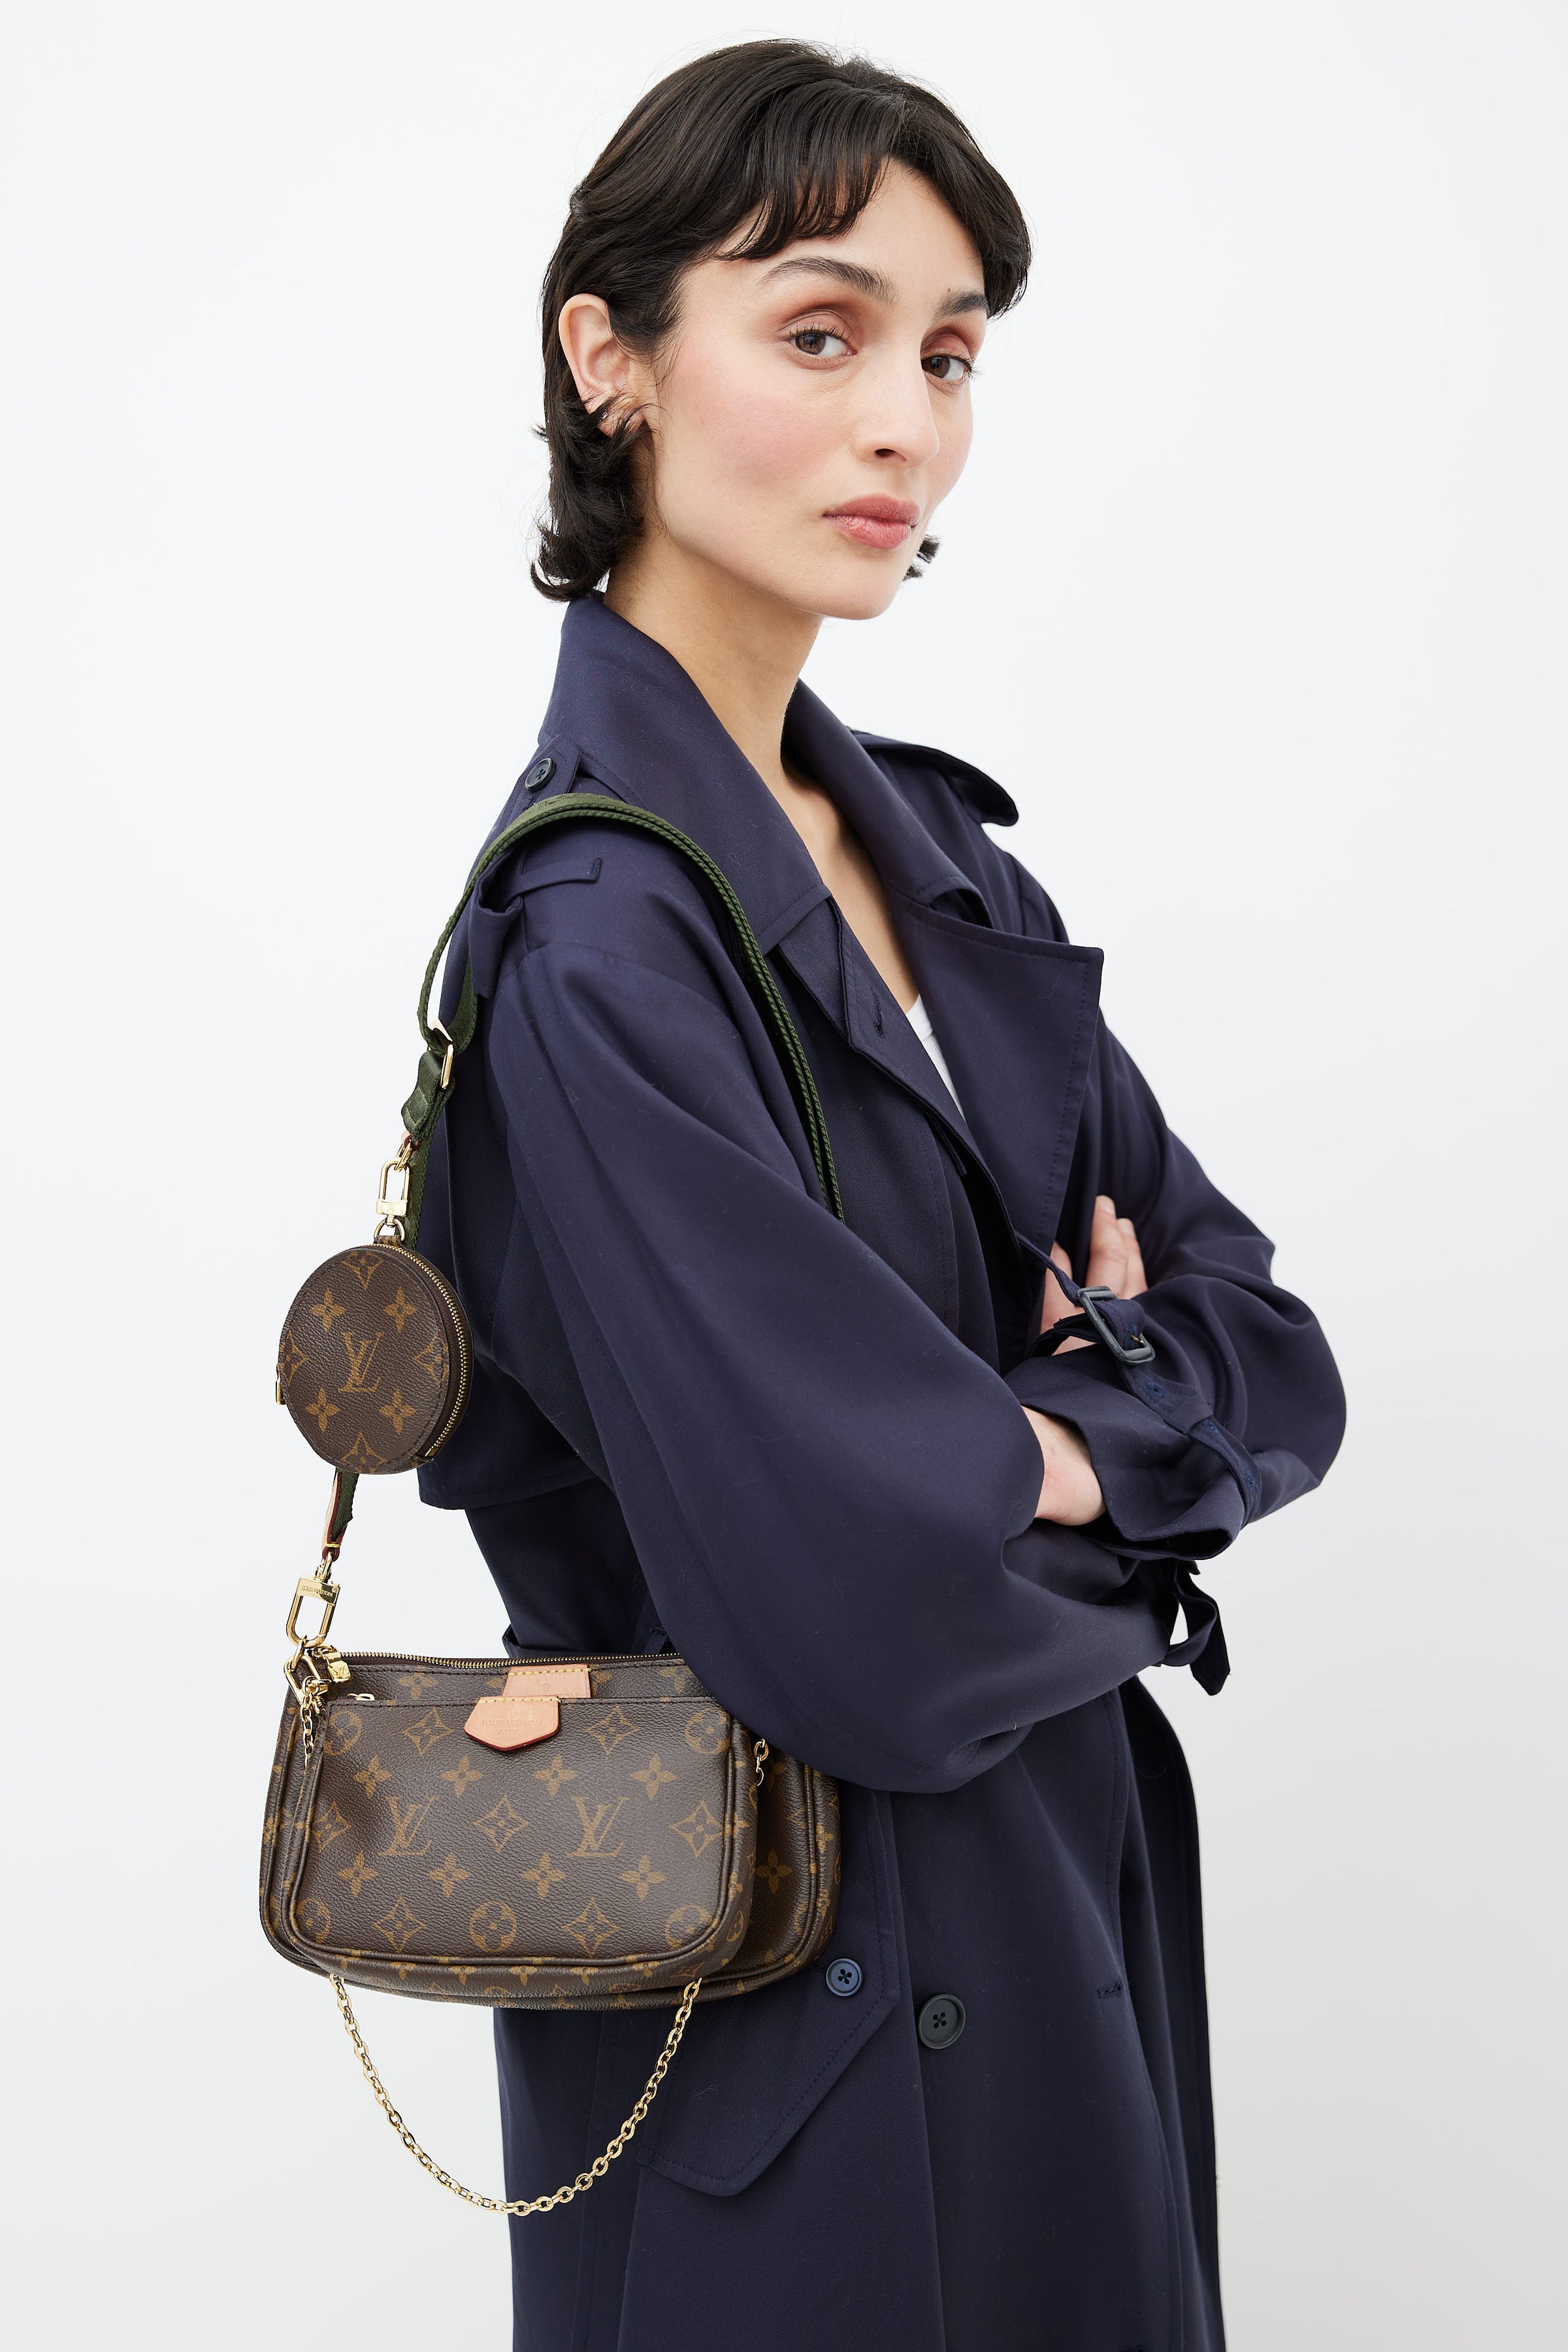 Louis Vuitton Multi-Pochette Accessoires Strap - Pink Bag